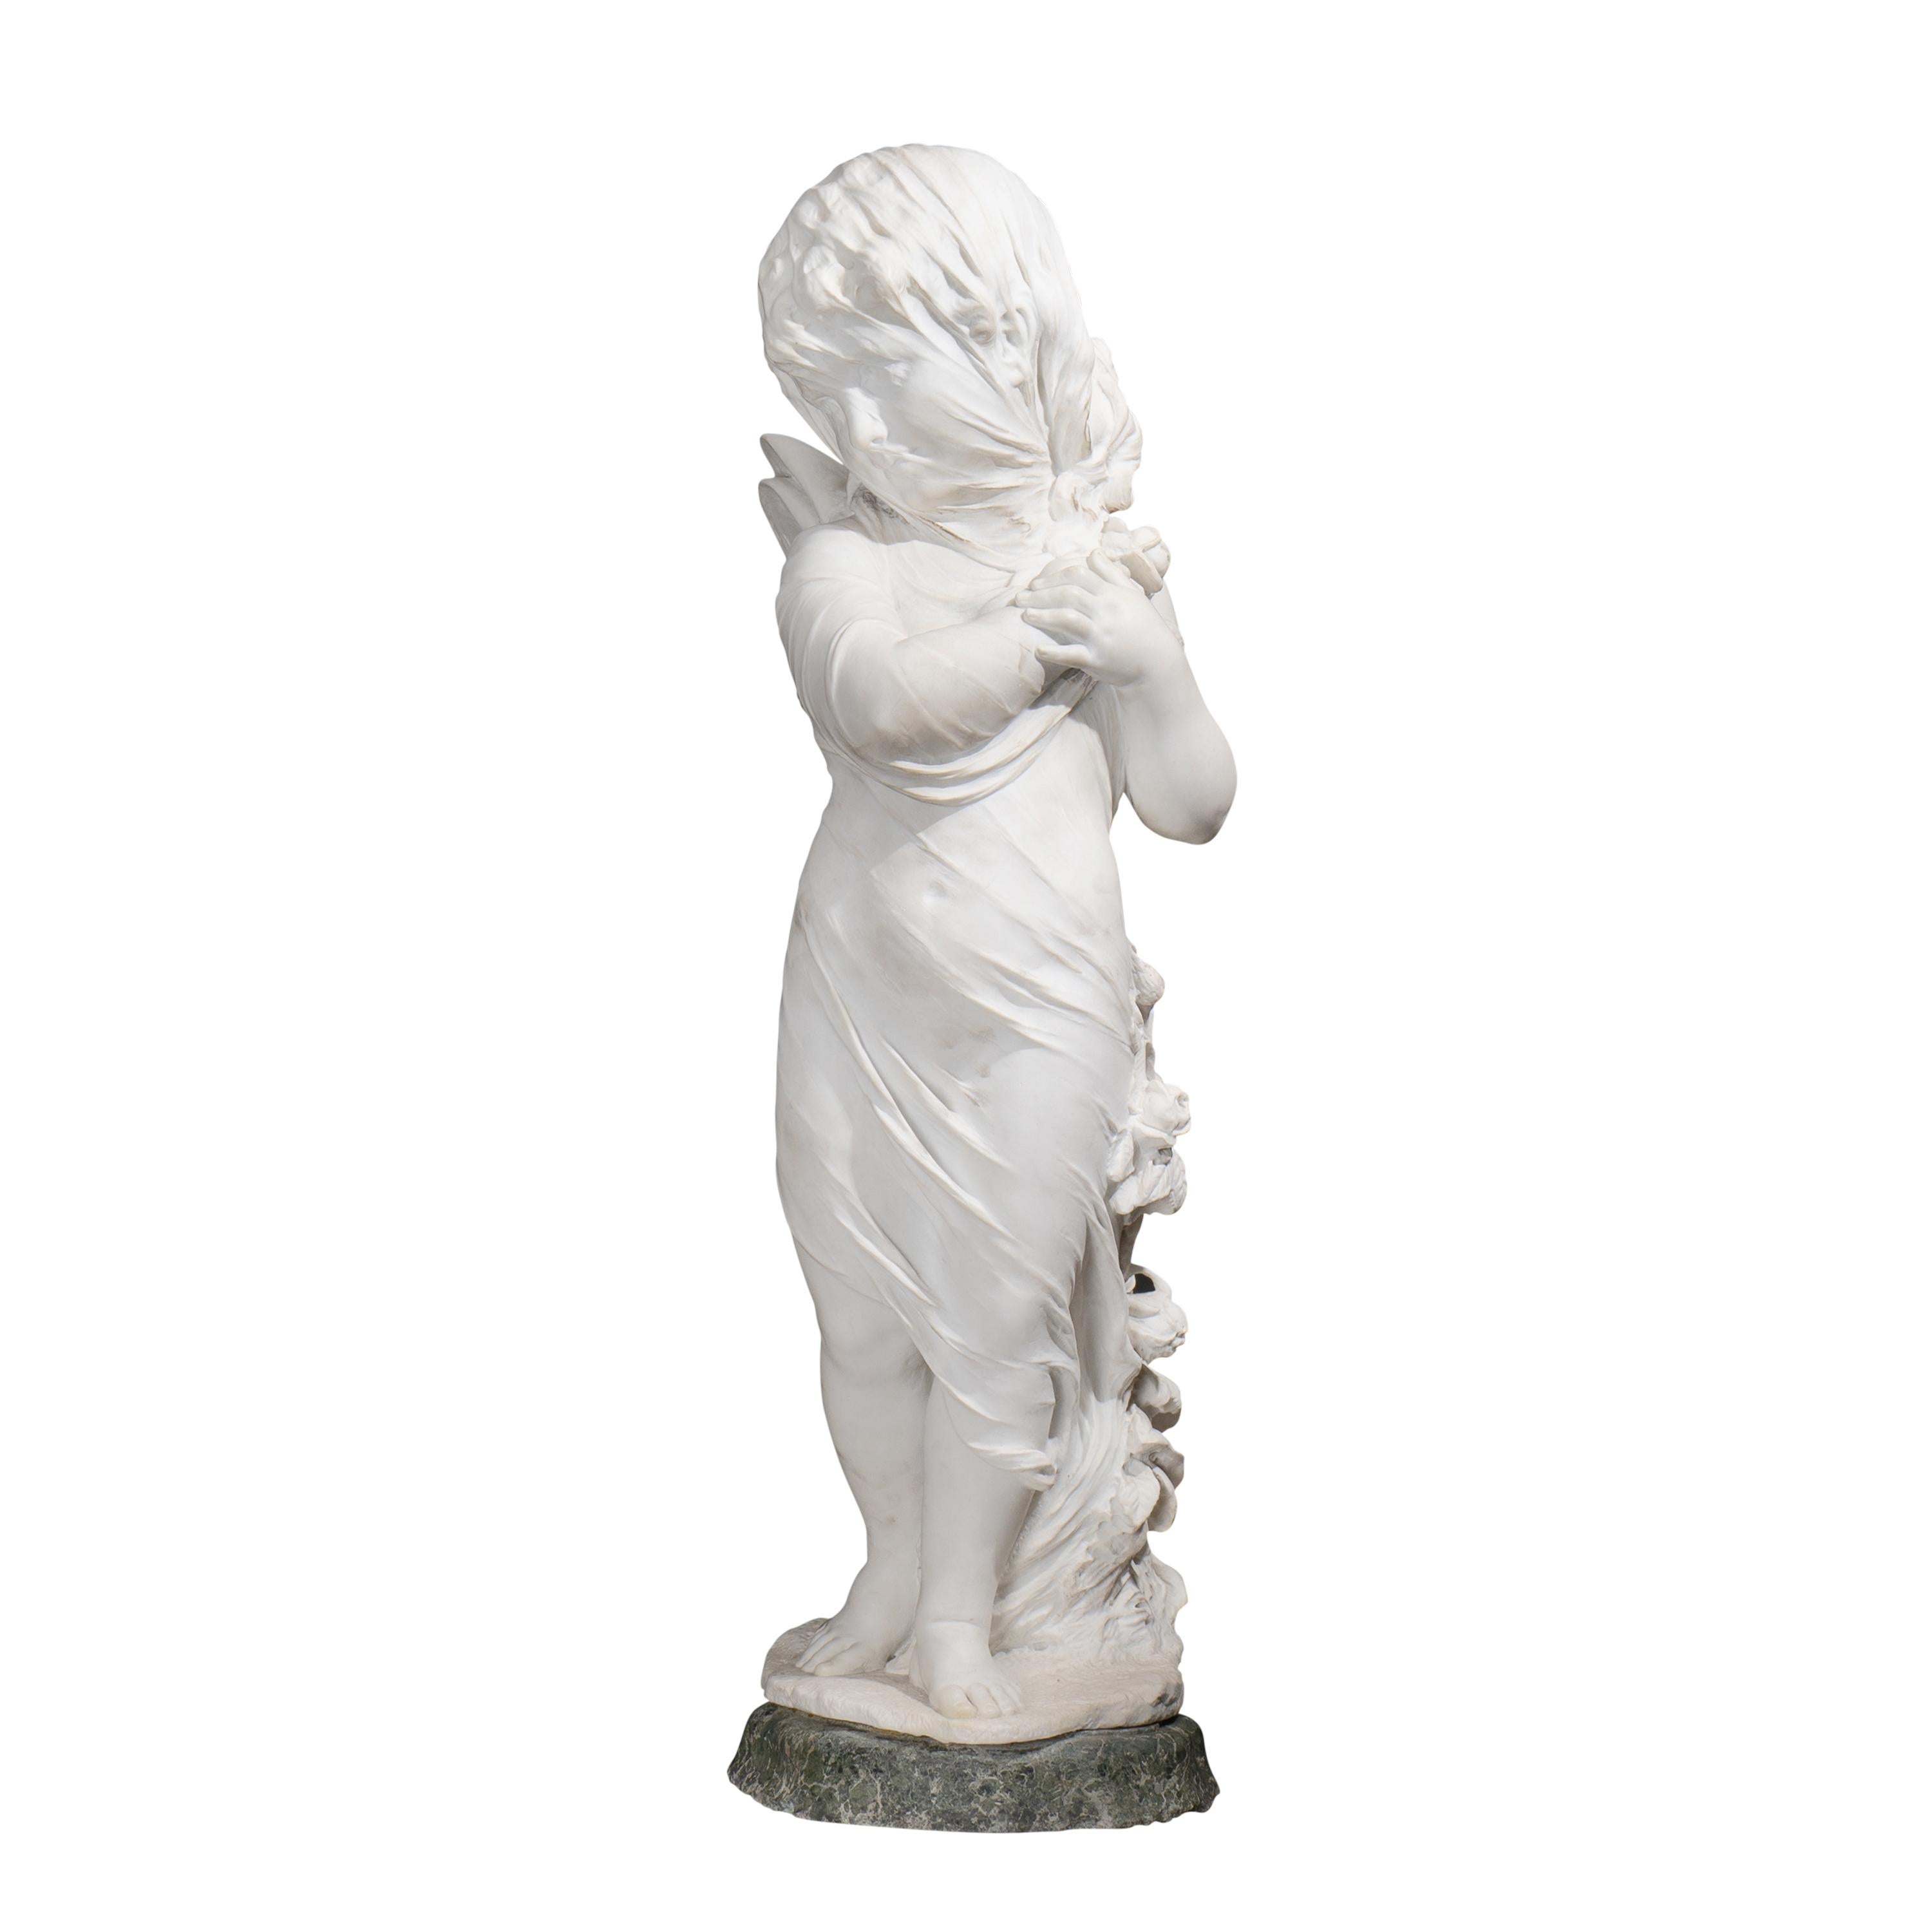 Eine Skulptur von Orazio Andreoni aus dem späten 19. bis frühen 20. Jahrhundert, die einen verschleierten Amor darstellt, strahlt eine exquisite Mischung aus klassischer Kunstfertigkeit und romantischem Charme aus. Andreoni, bekannt für seine